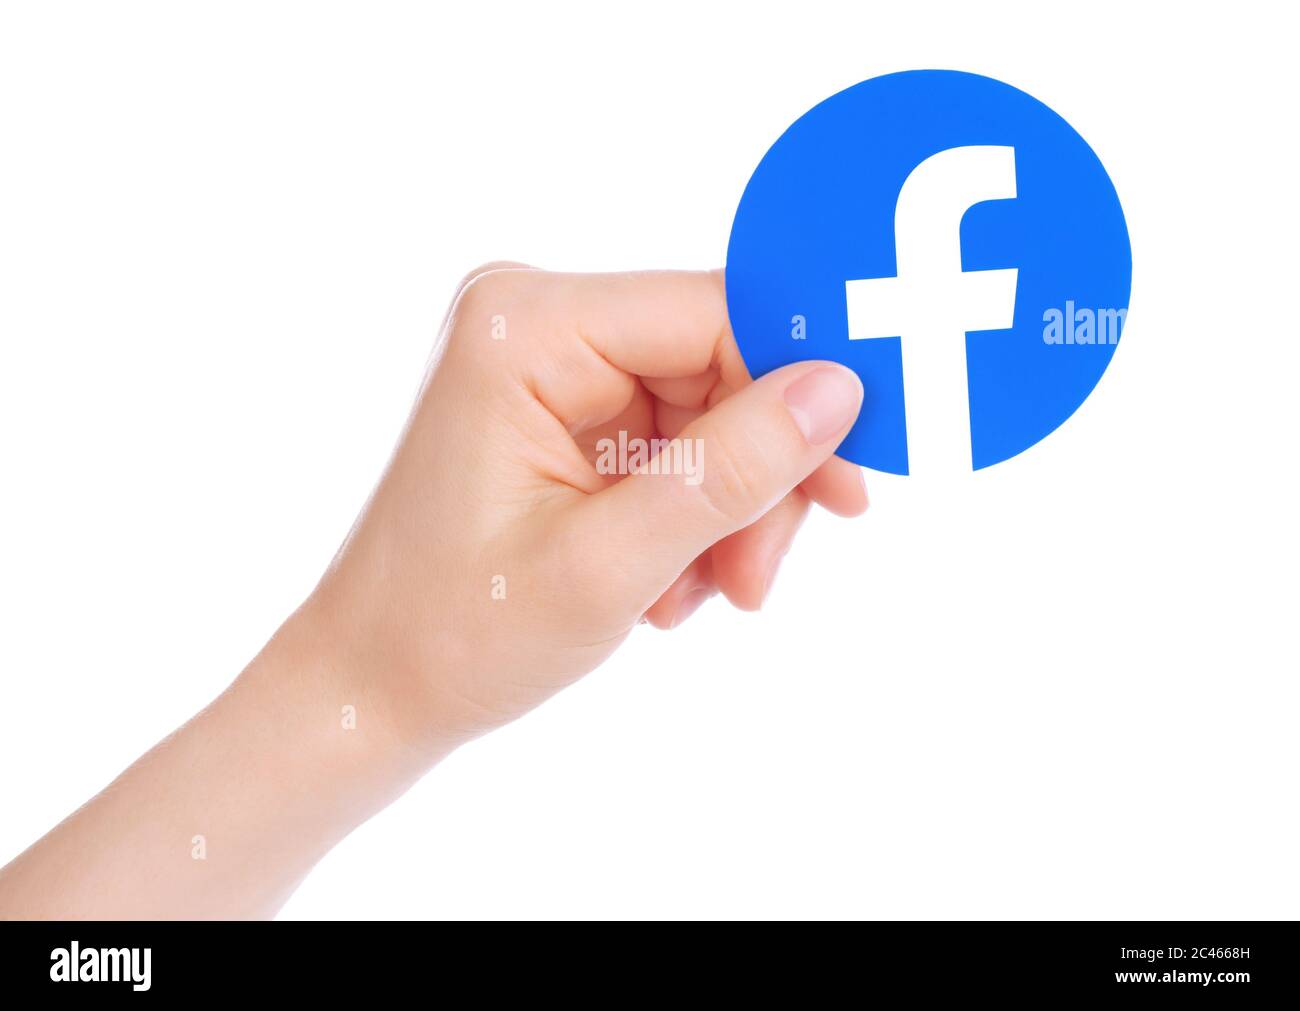 Kiew, Ukraine - 15. Mai 2019: Hand hält neues Facebook-Logo auf Papier gedruckt. Facebook ist ein bekannter Dienst für soziale Netzwerke Stockfoto